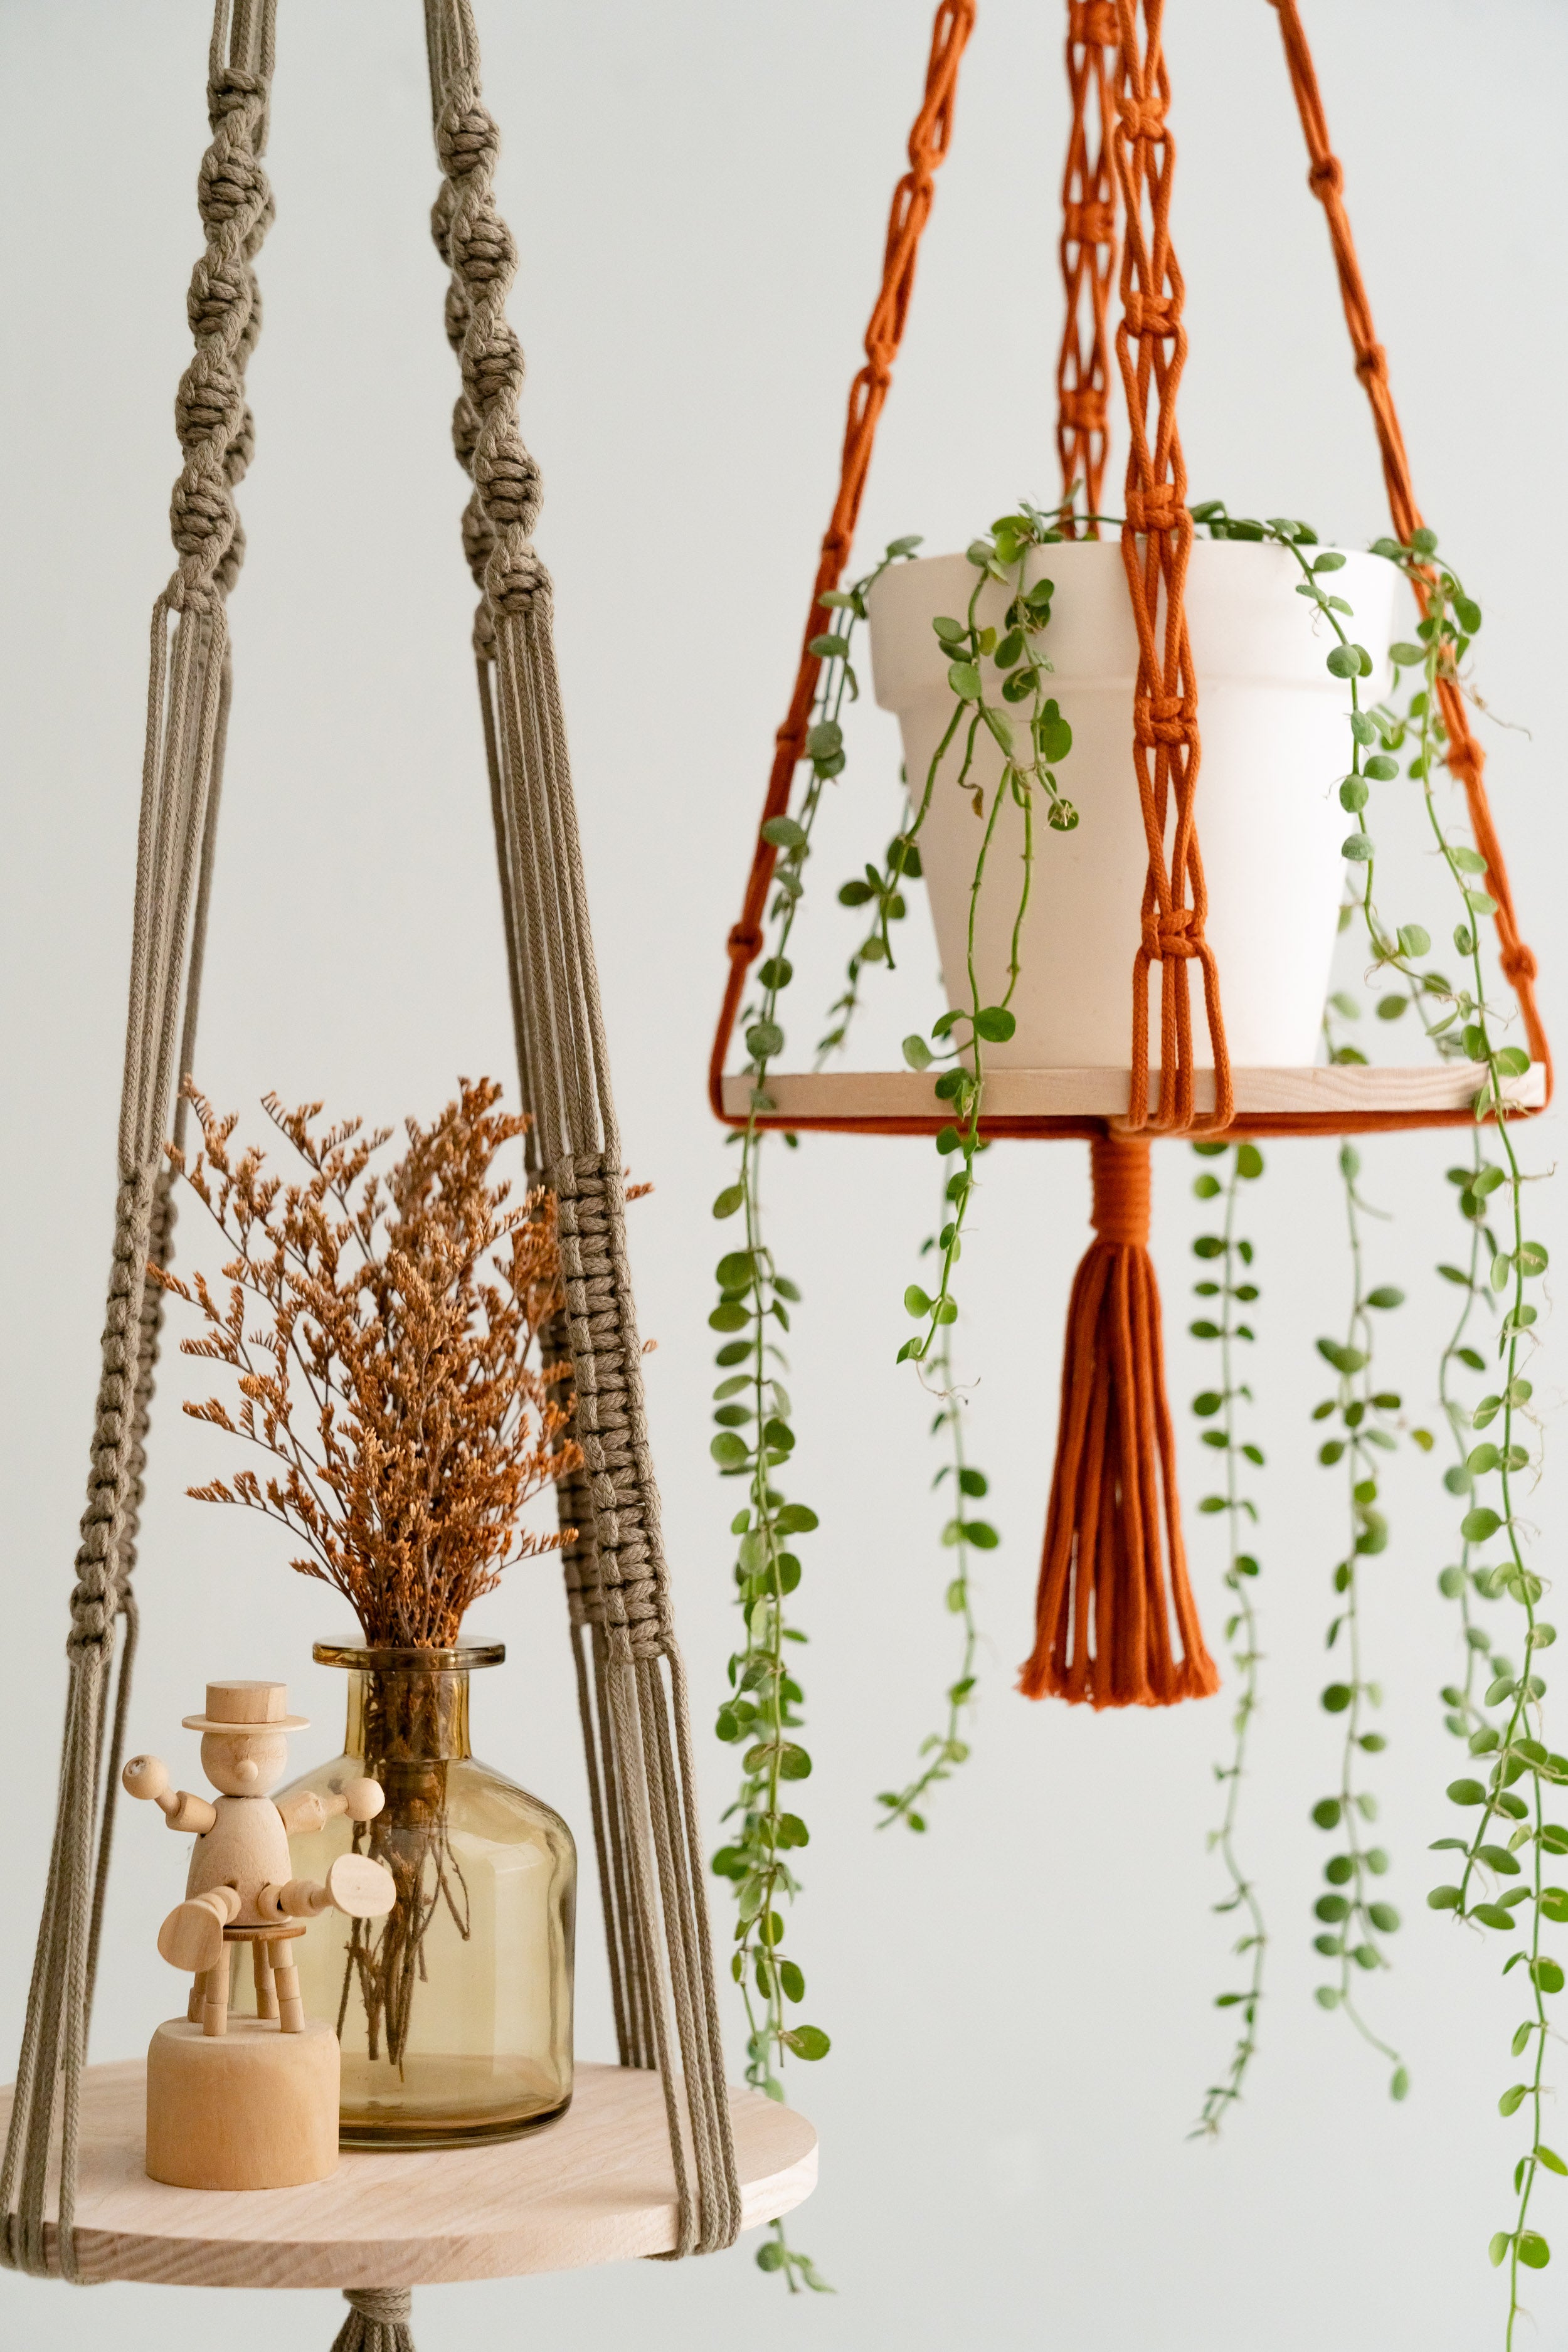 Wood Shelf Plant Holder for Modern Hanging Planters